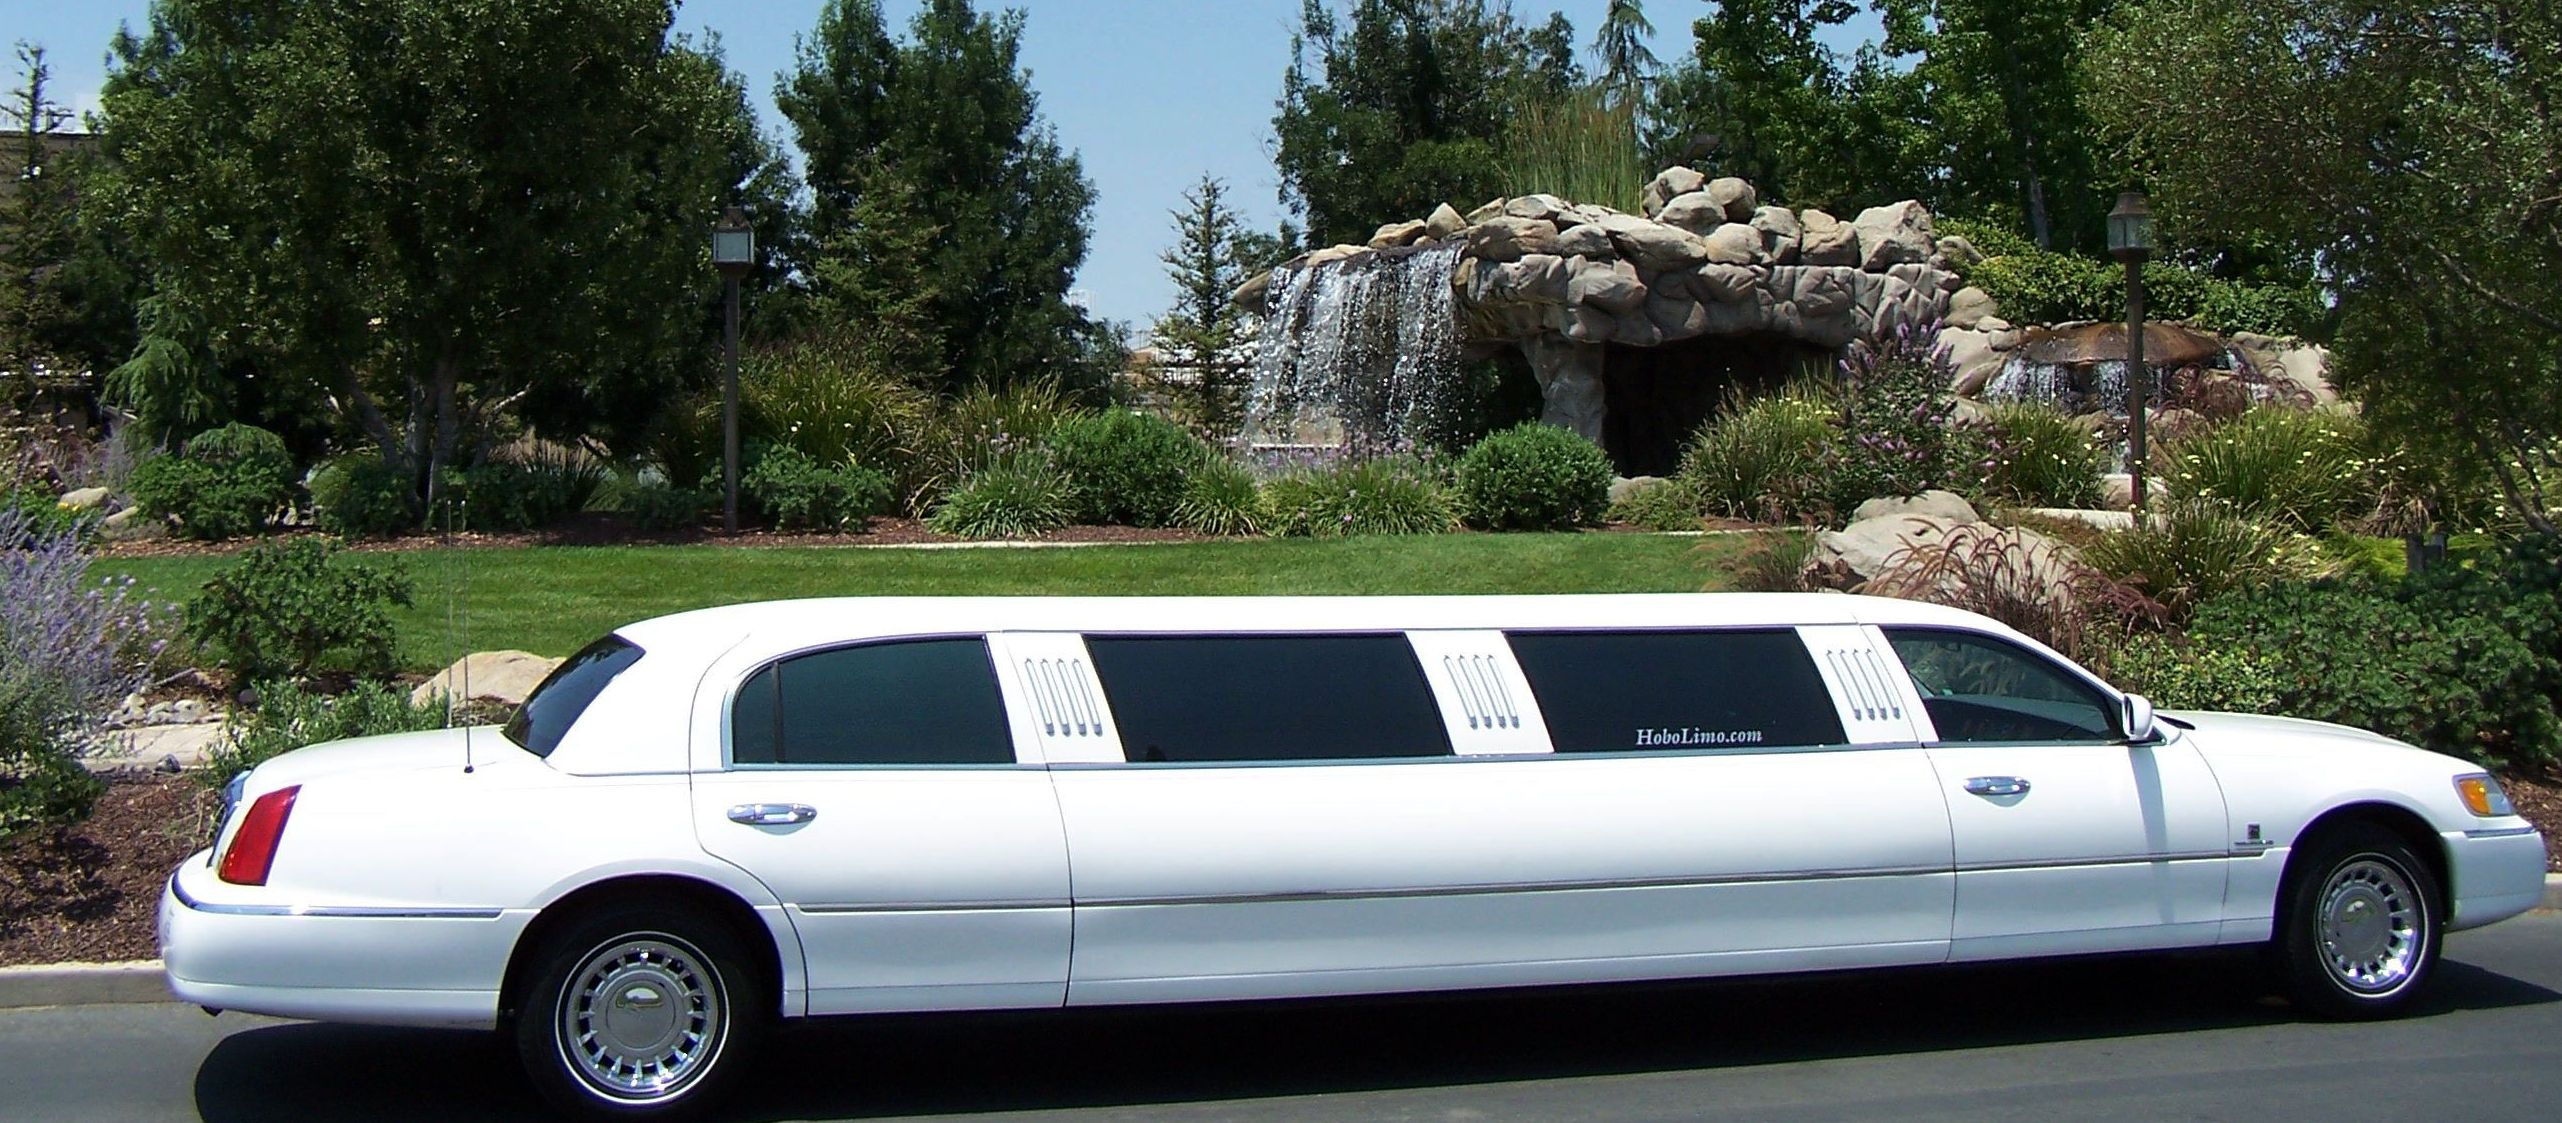 Voiture de Ville Lincoln Continental limousine